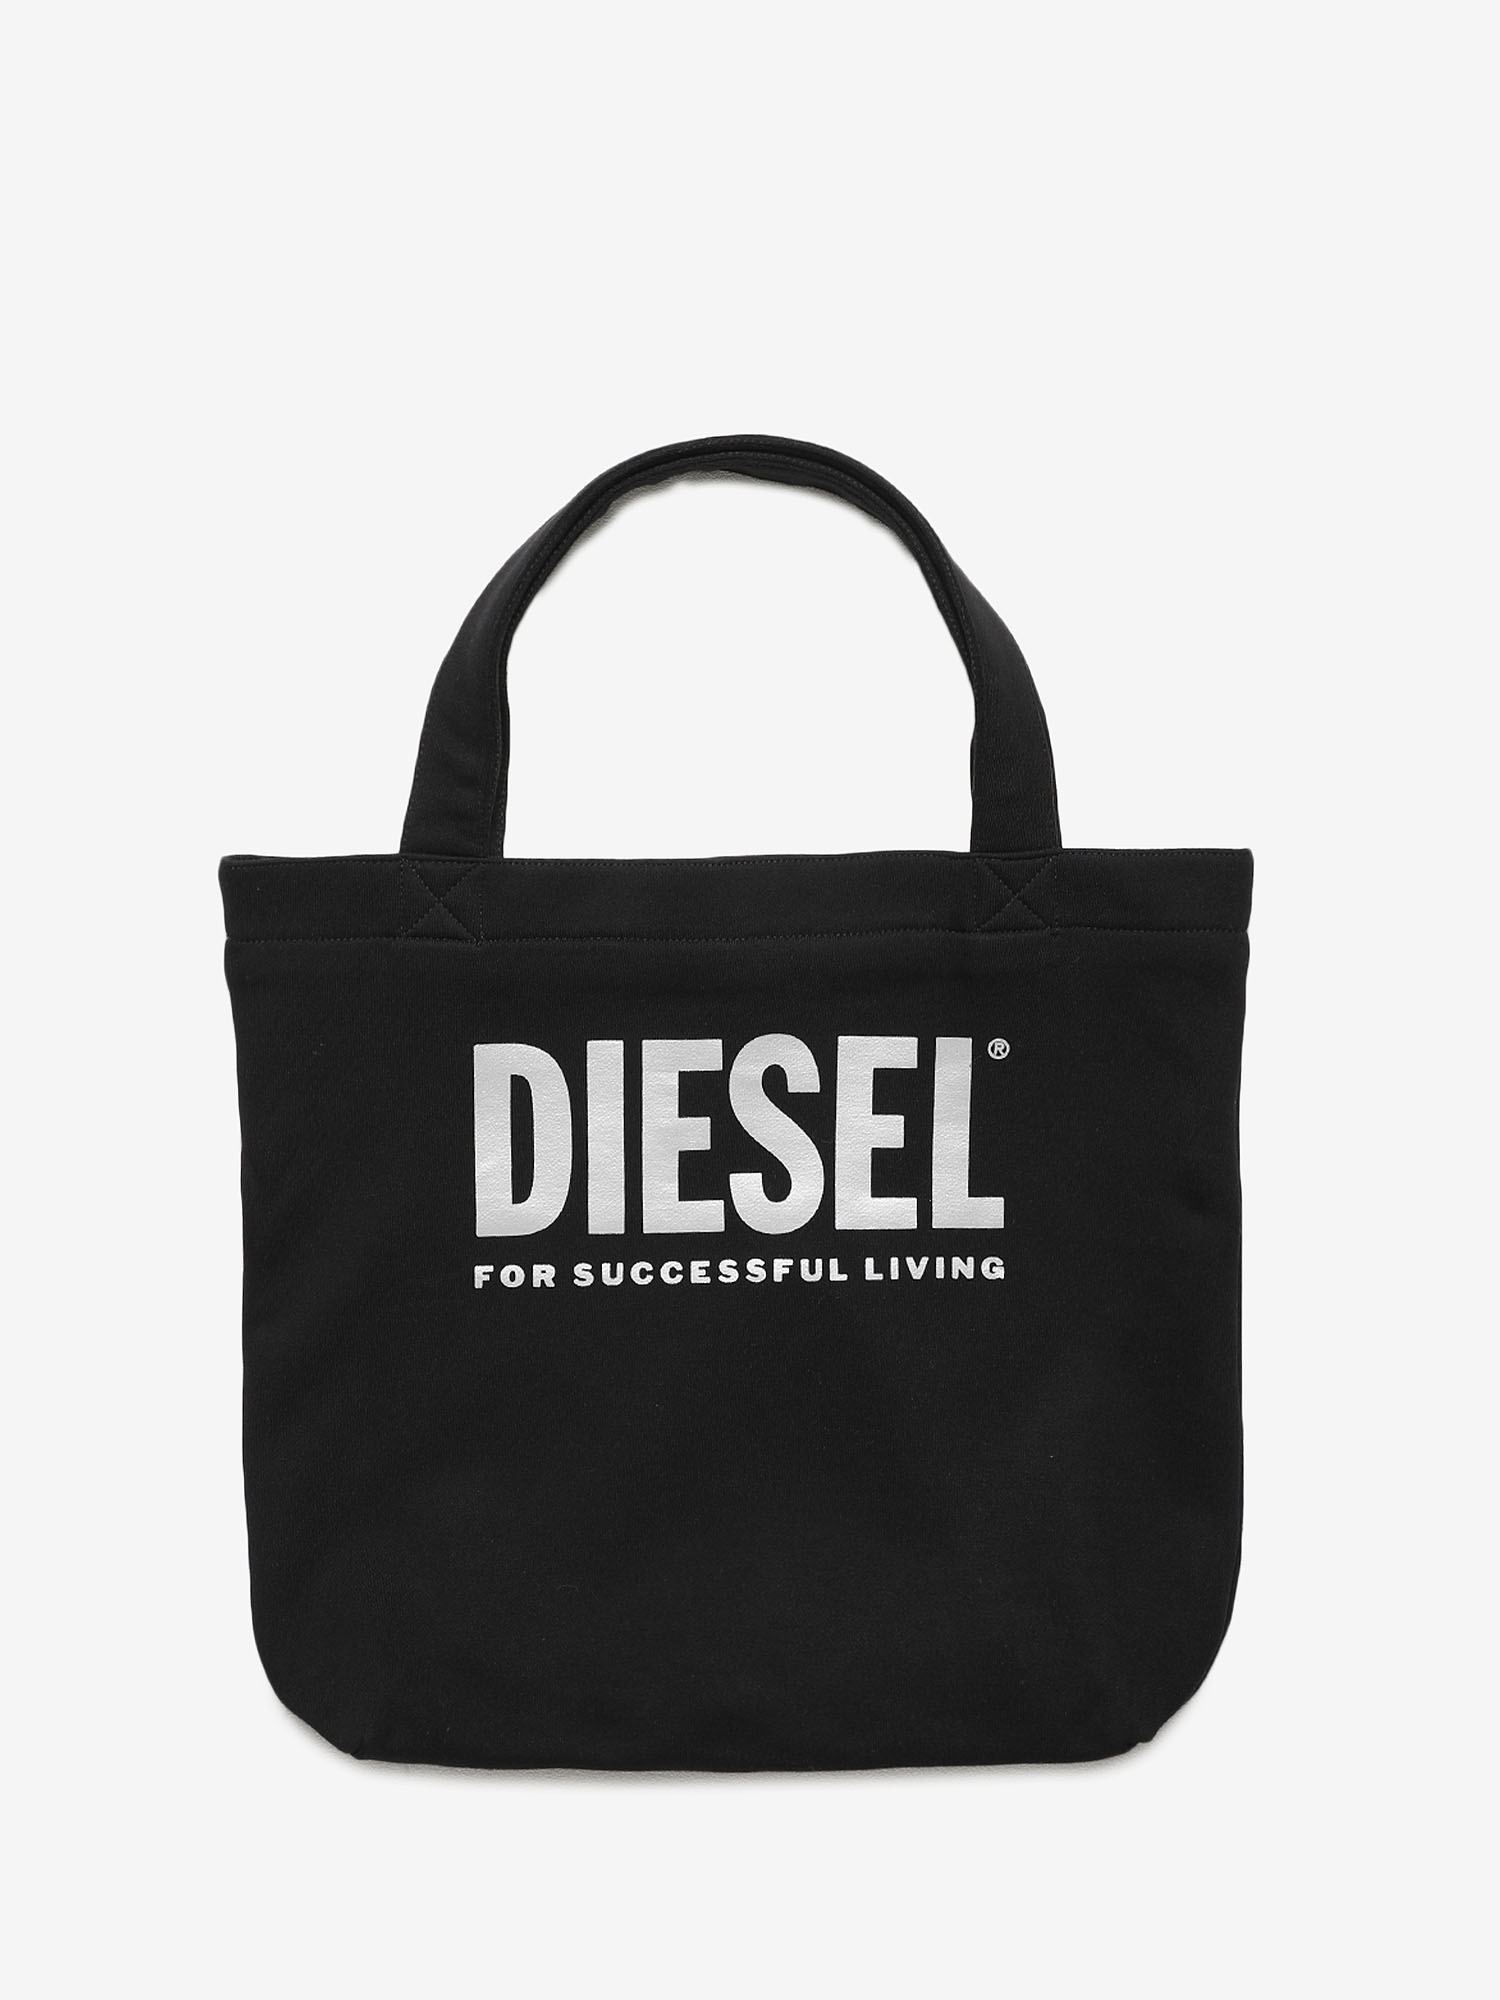 Diesel - WALLY, Black - Image 1